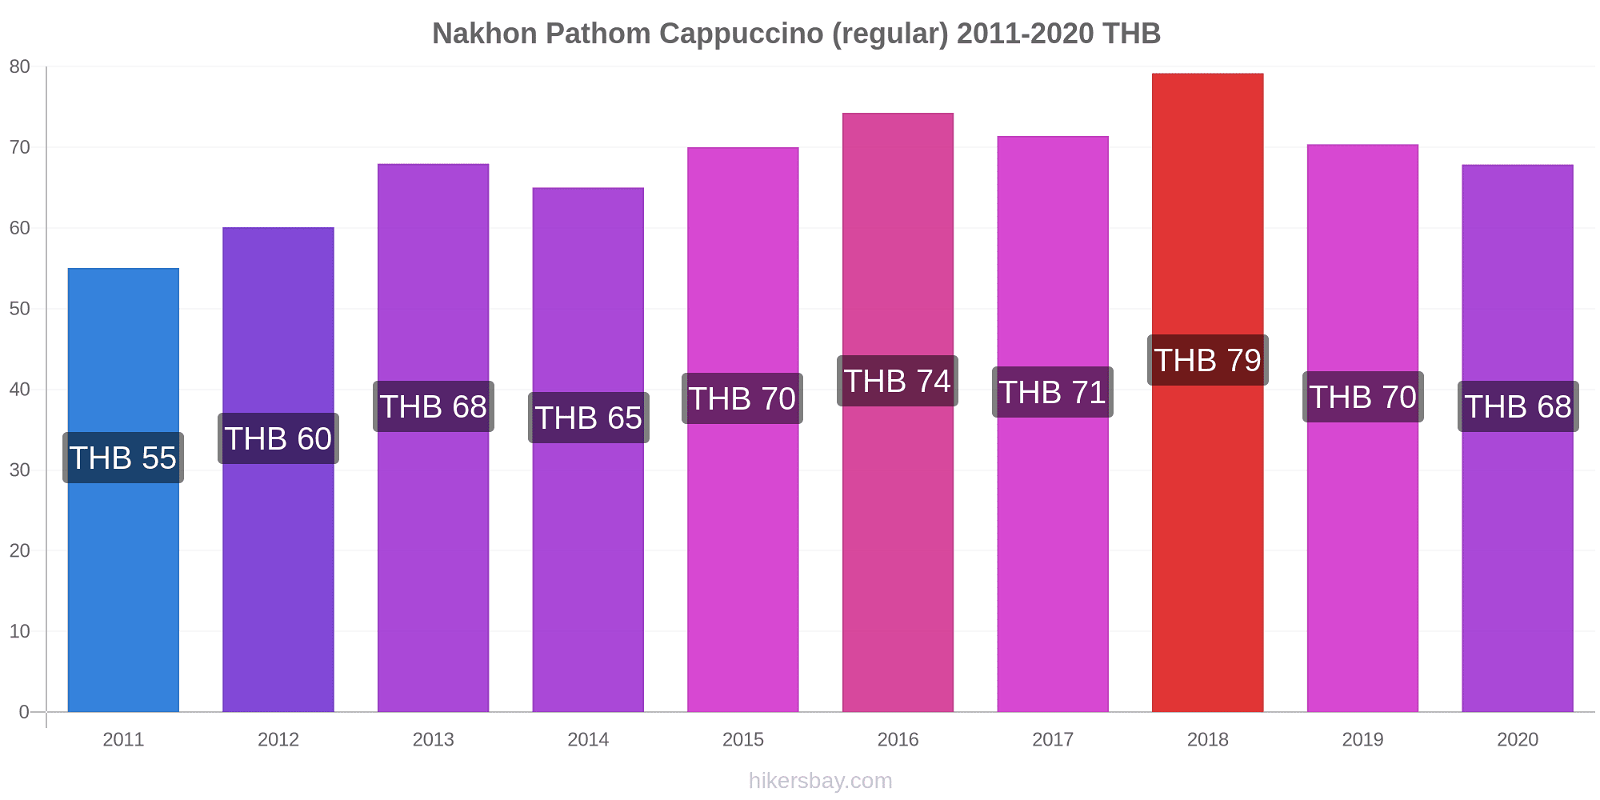 Nakhon Pathom variação de preço Capuccino (regular) hikersbay.com